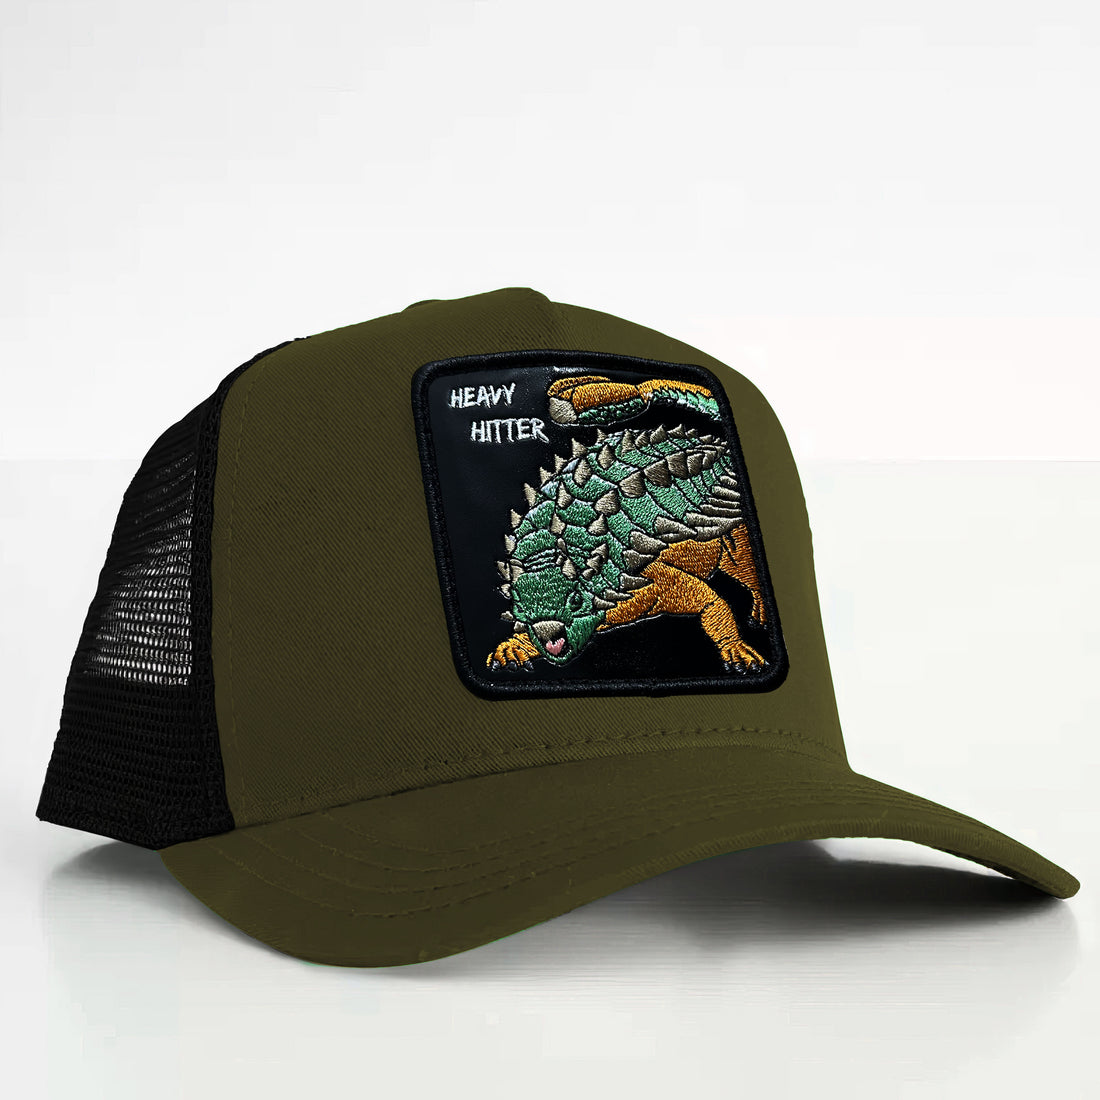 Anklyosaurus - "Heavy Hitter" Trucker Hat